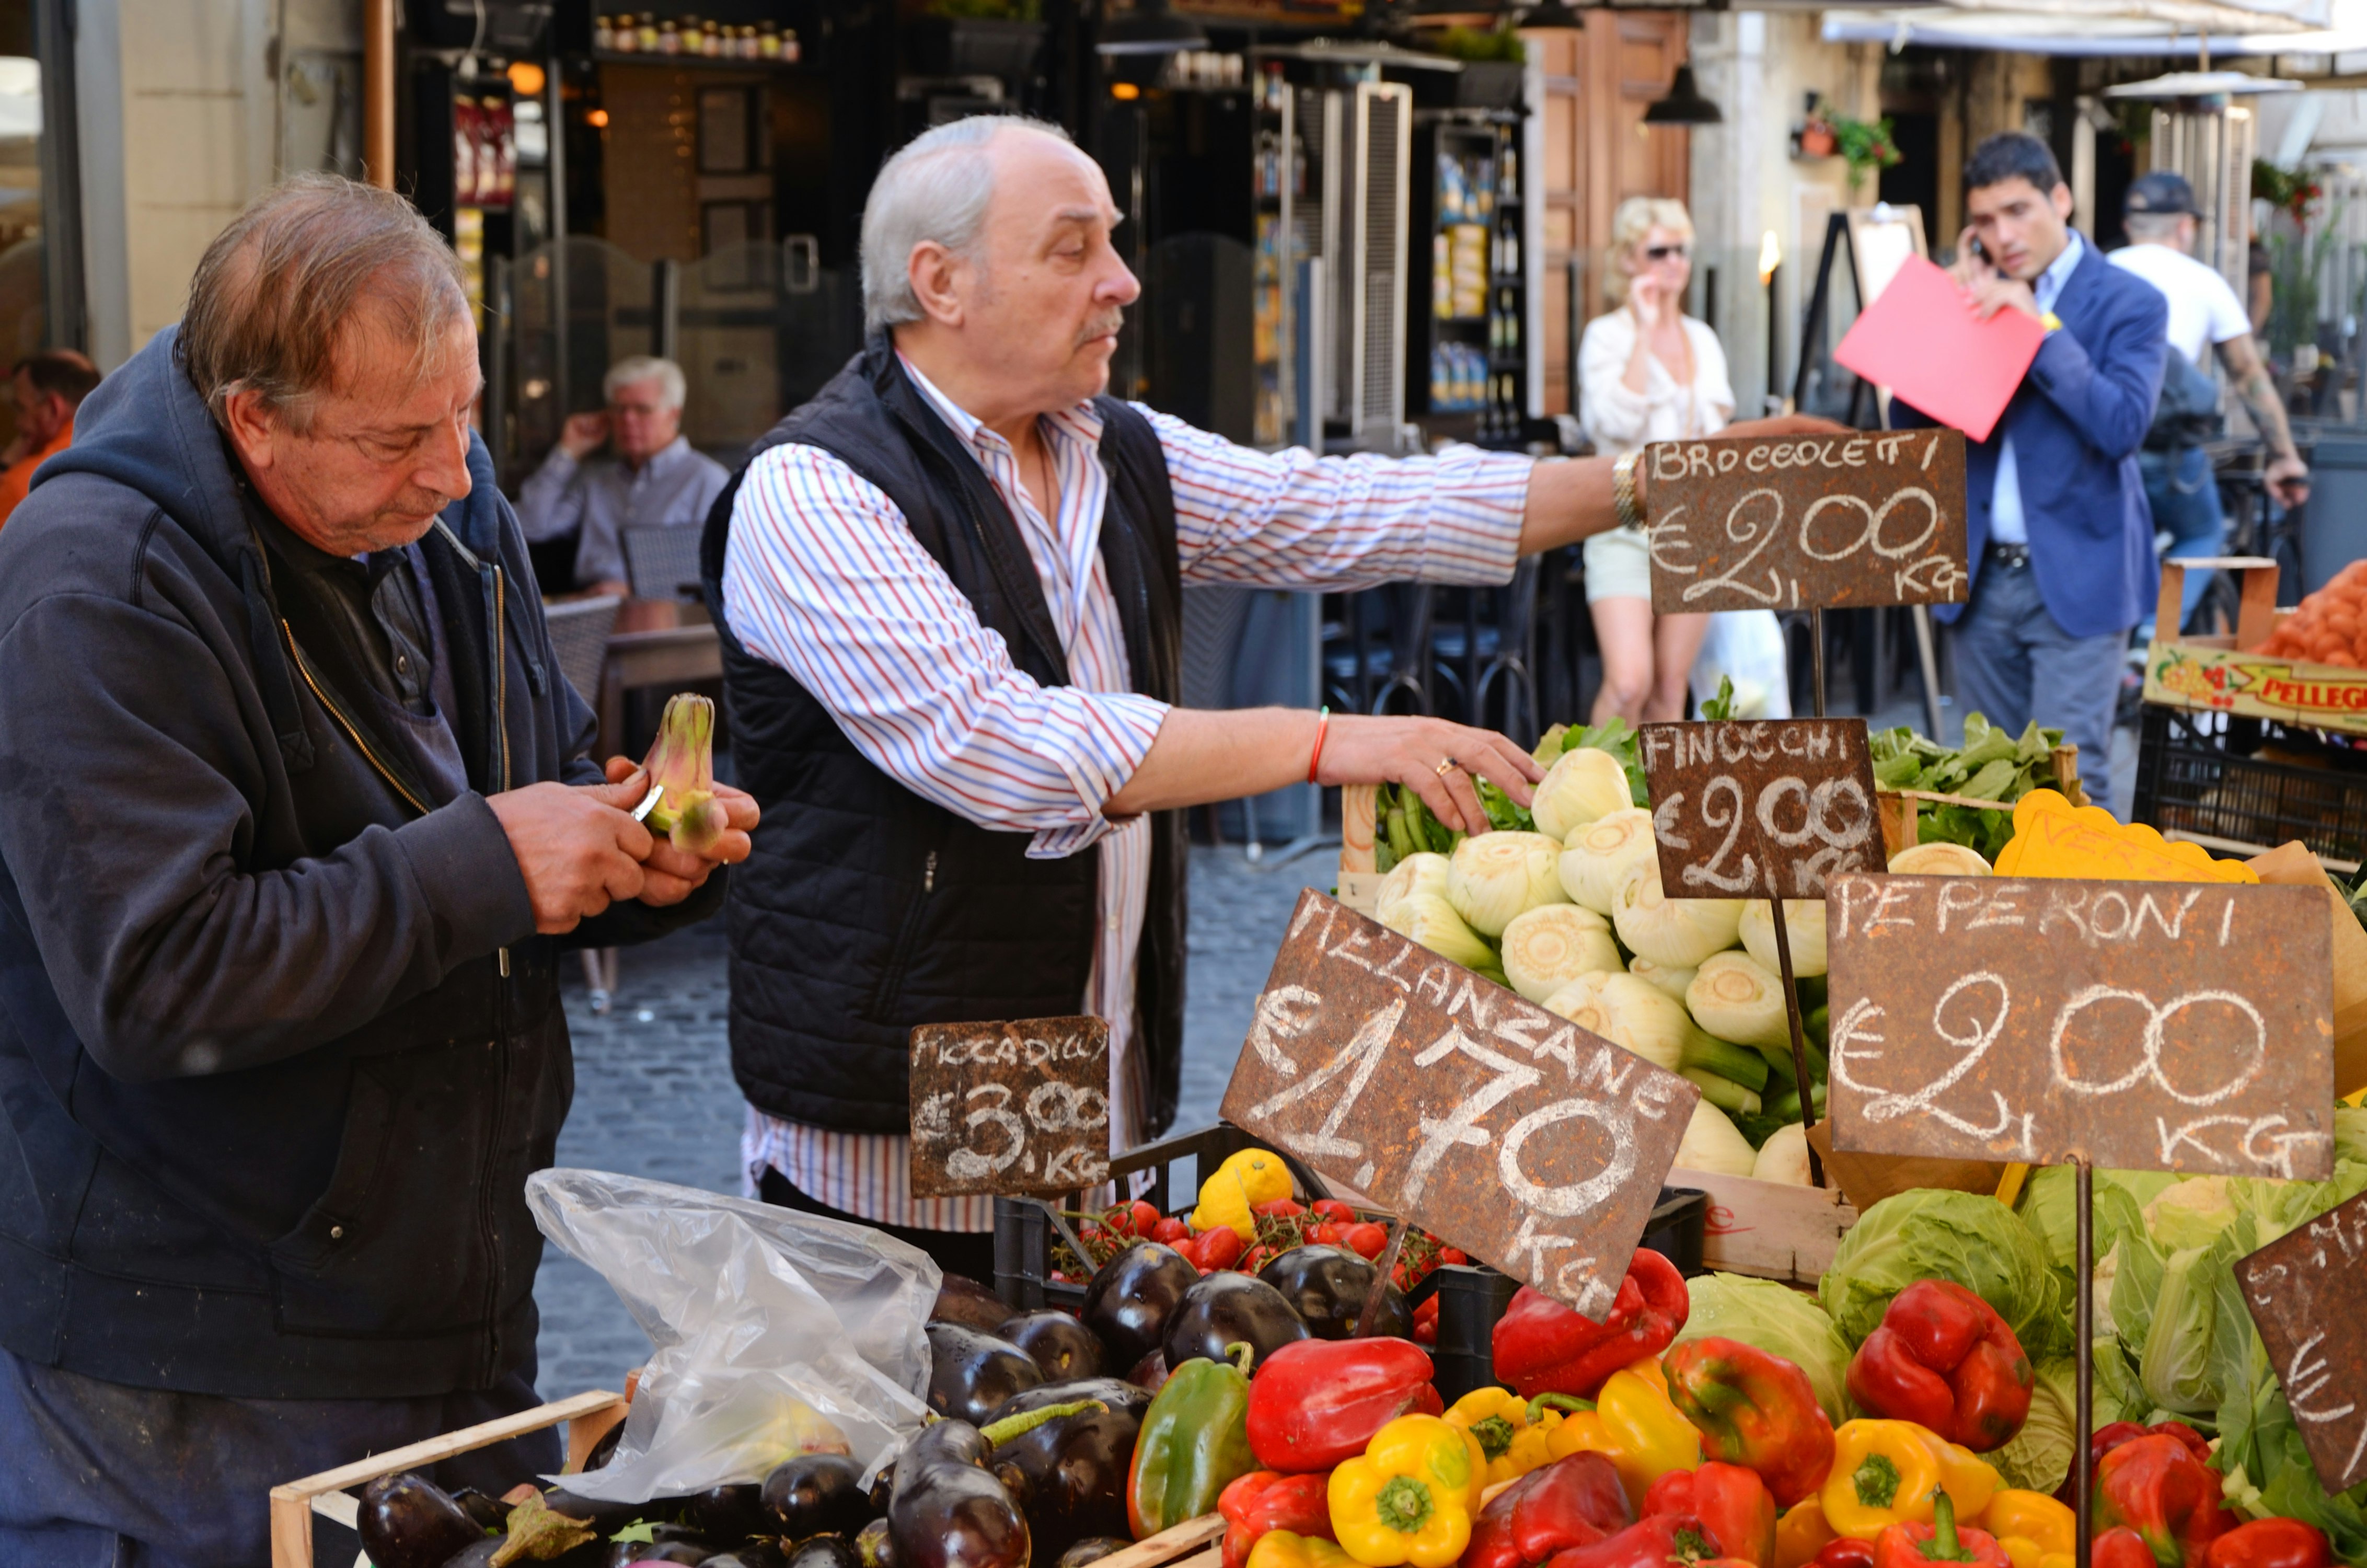 Two vendors selling fresh produce at Campo dei Fiori farmer's market in Rome.